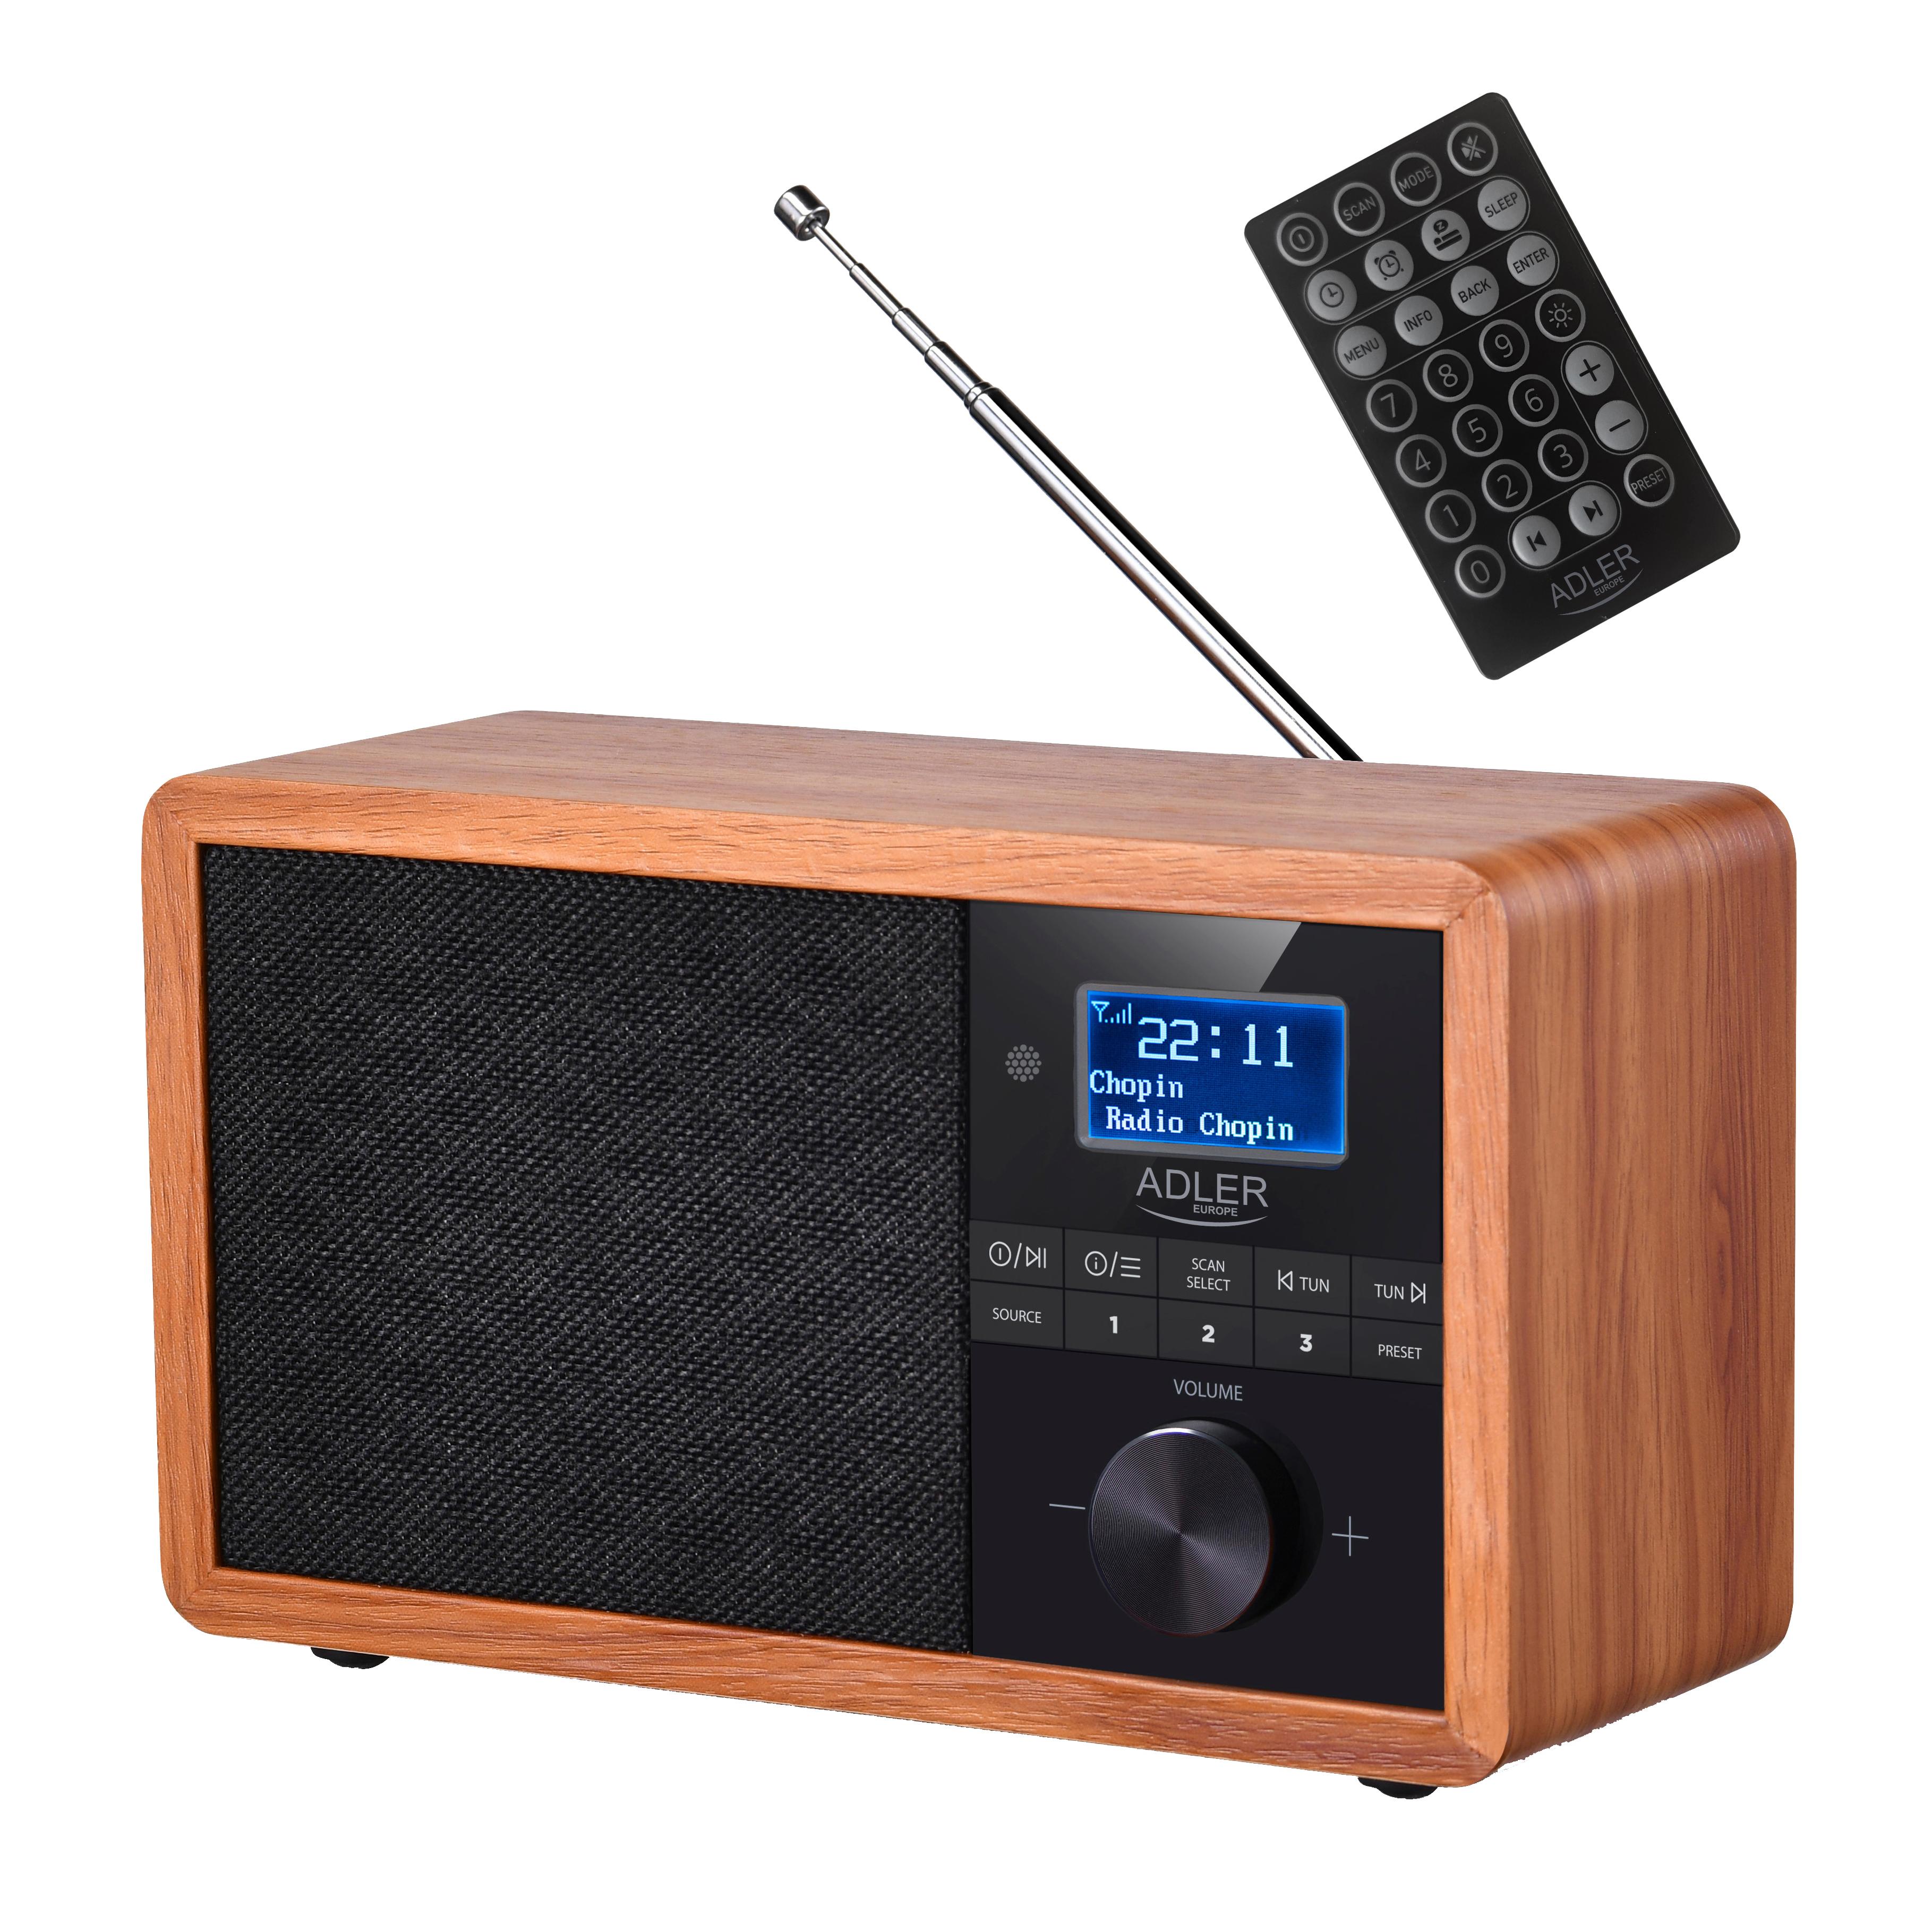 FM, DAB+, Radio, AM, ADLER braun AD 1184 Bluetooth,